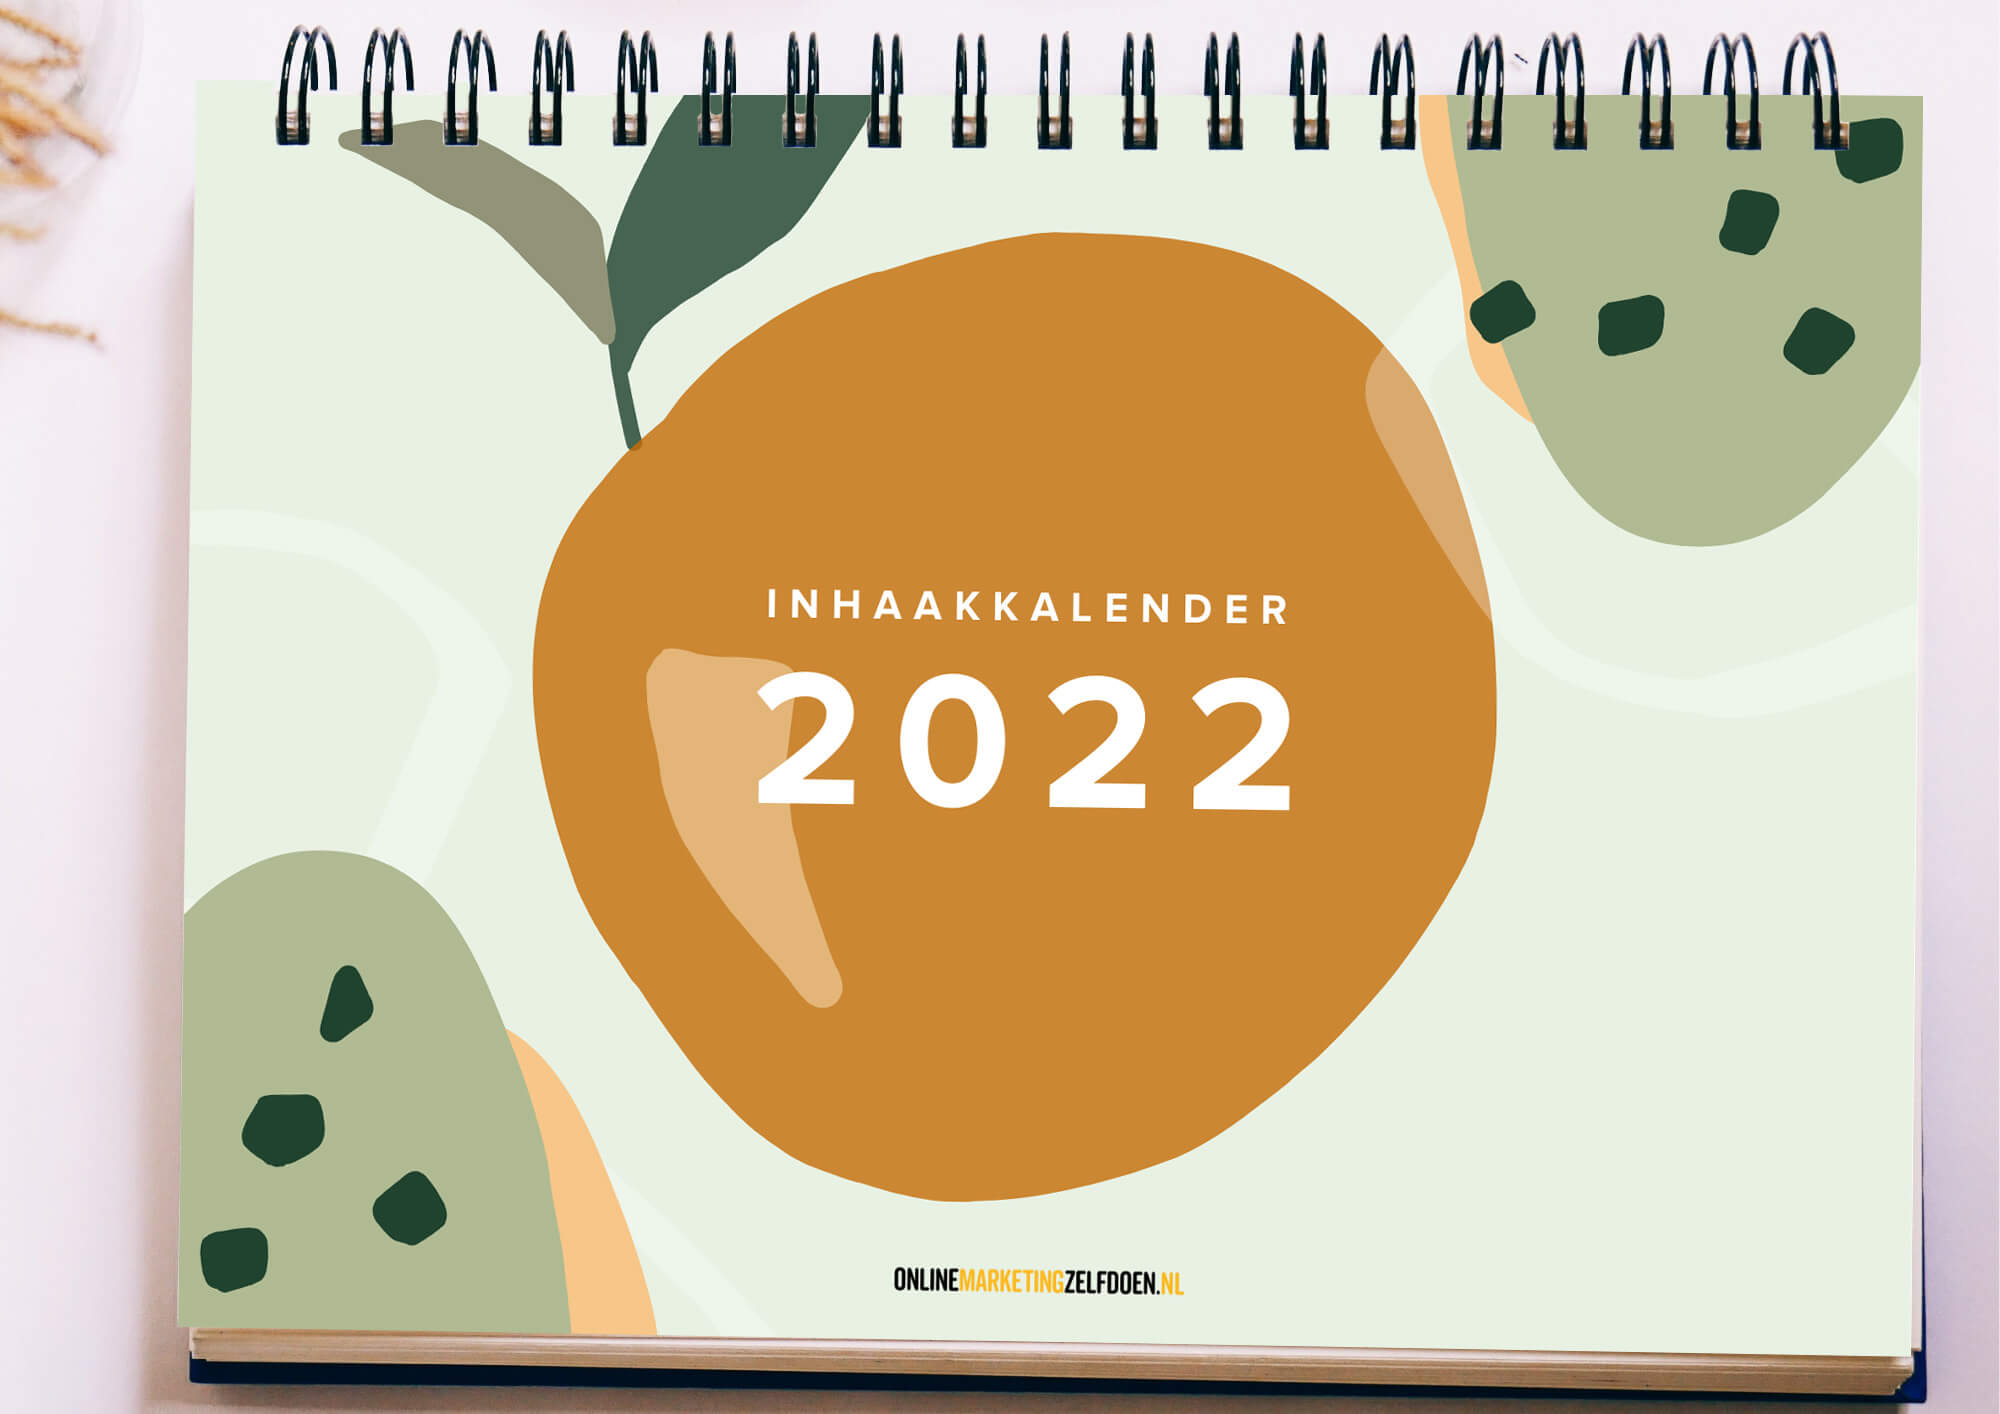 als Wacht even opvoeder Gratis Inhaakkalender 2022 - Online Marketing Zelf Doen